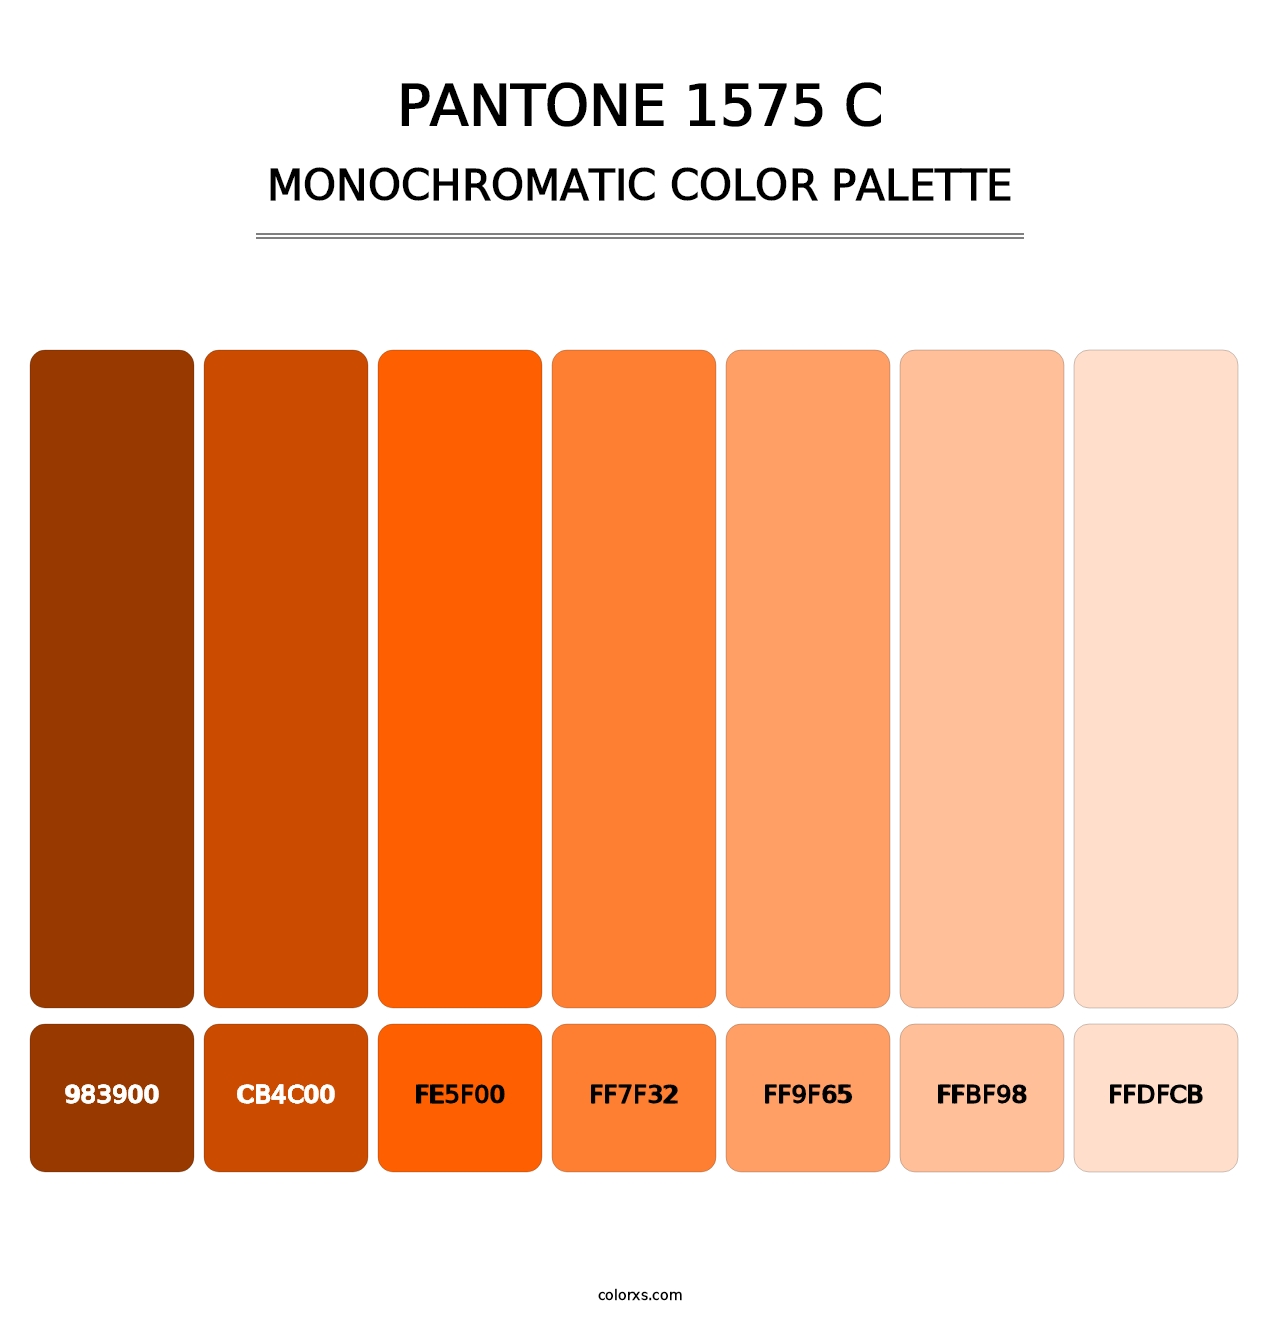 PANTONE 1575 C - Monochromatic Color Palette